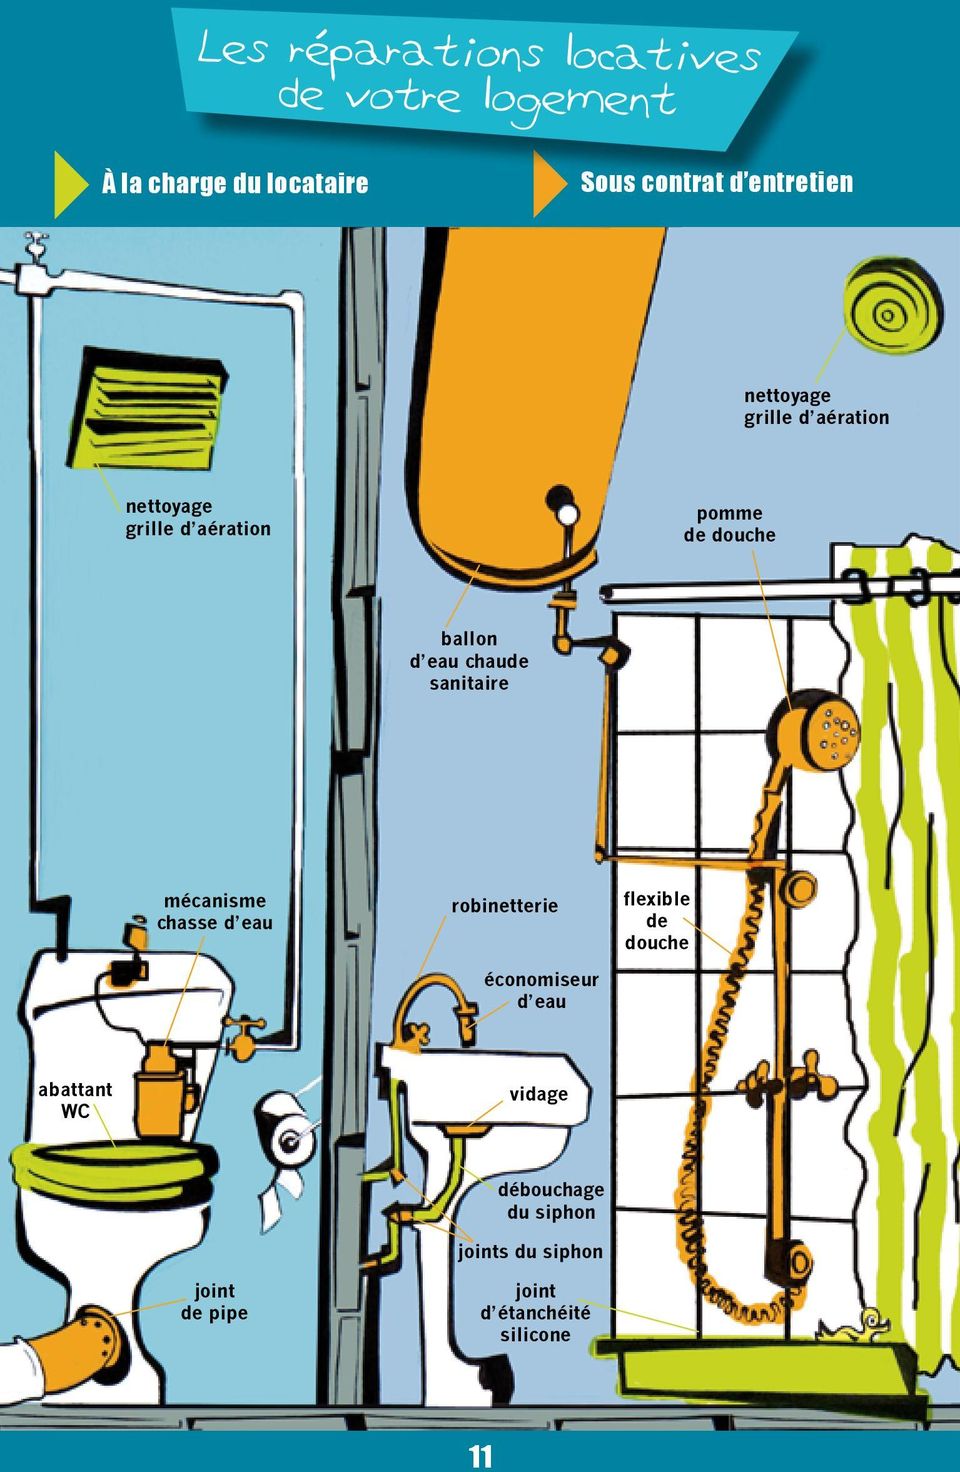 eau chaude sanitaire mécanisme chasse d eau robinetterie économiseur d eau flexible de